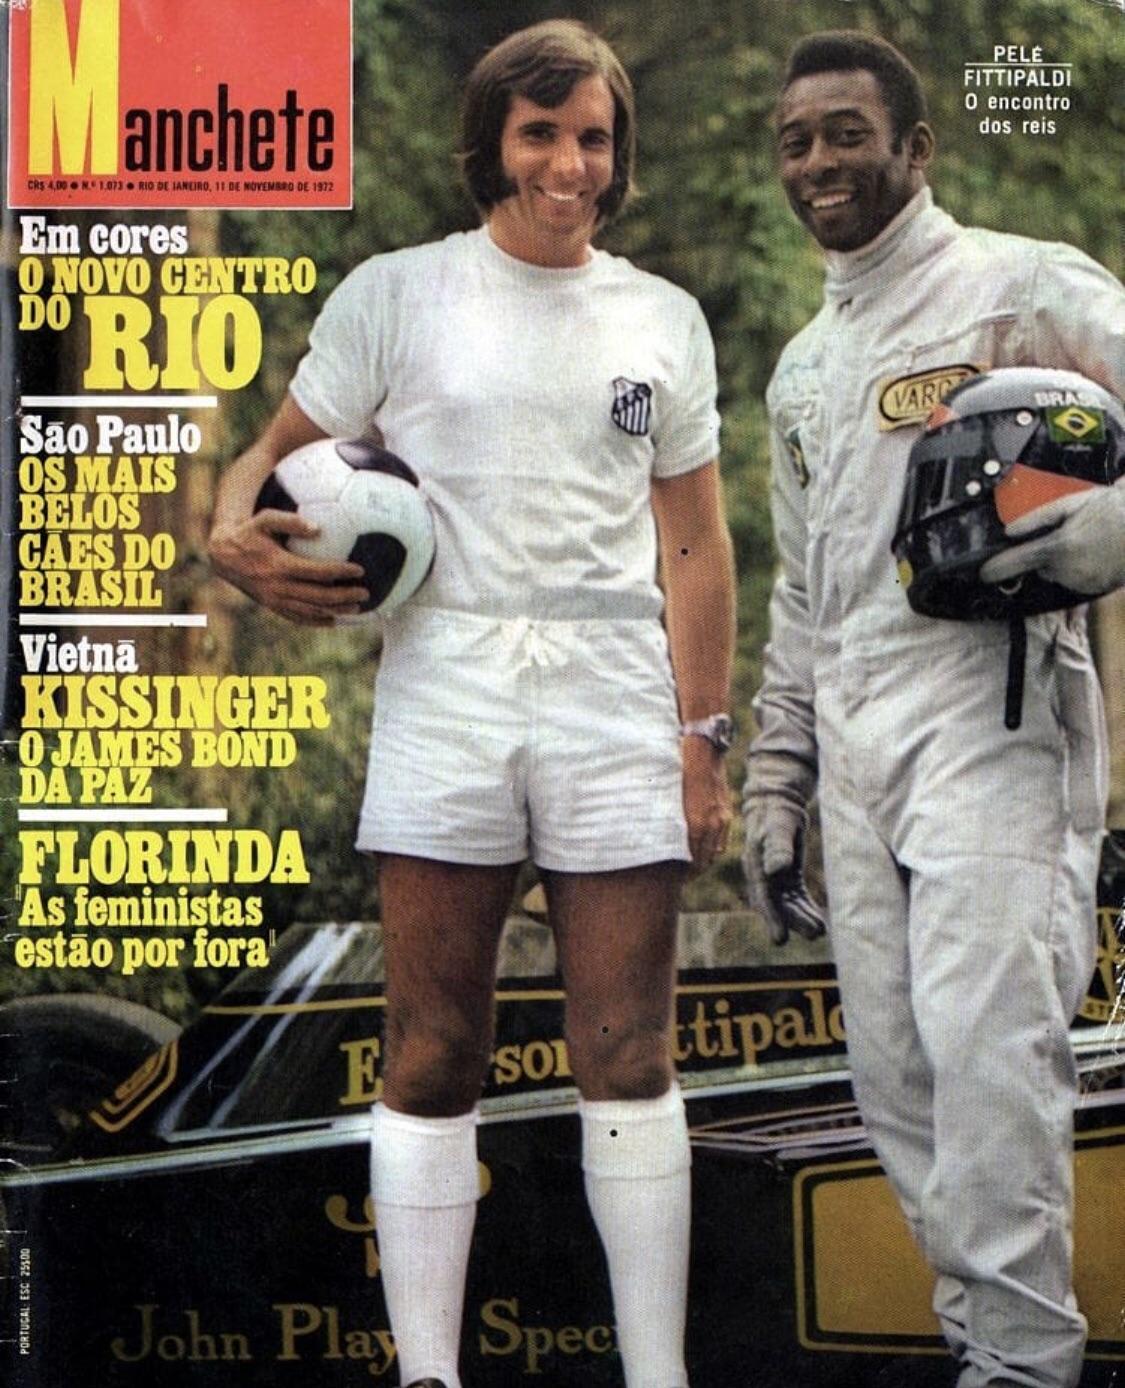 Emerson Fittipaldi and Pelé on a Brazilian magazine in 1972.